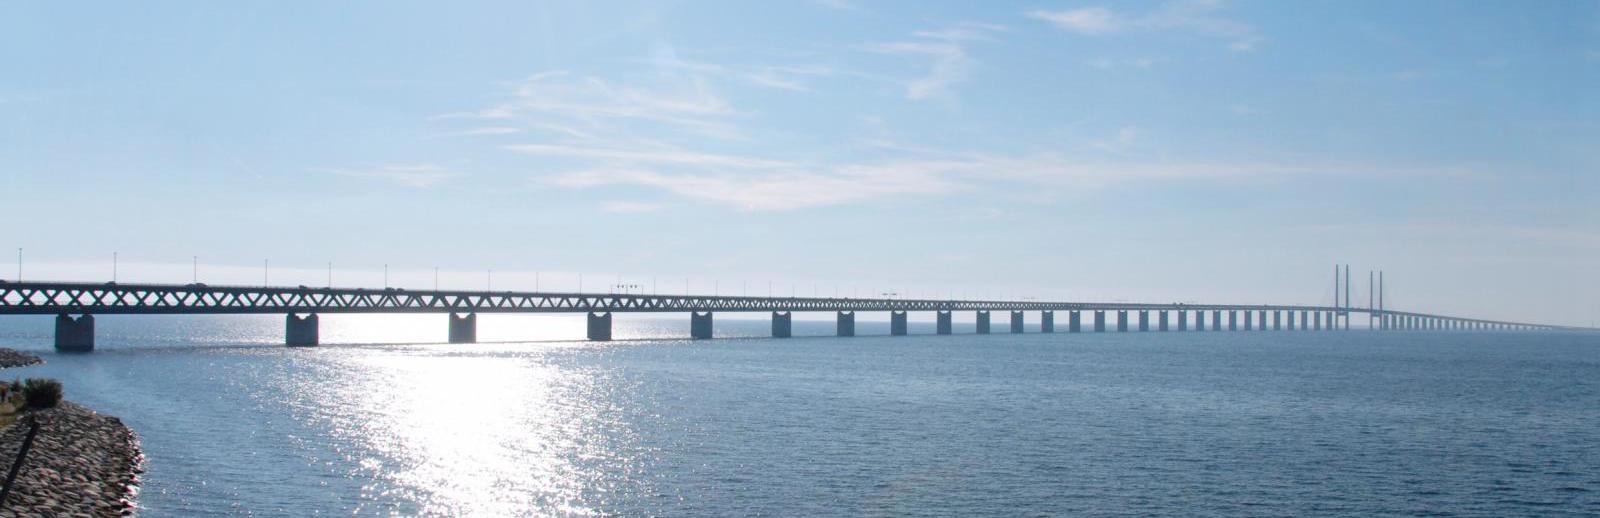 Oresund bridge connecting Sweden and Denmark